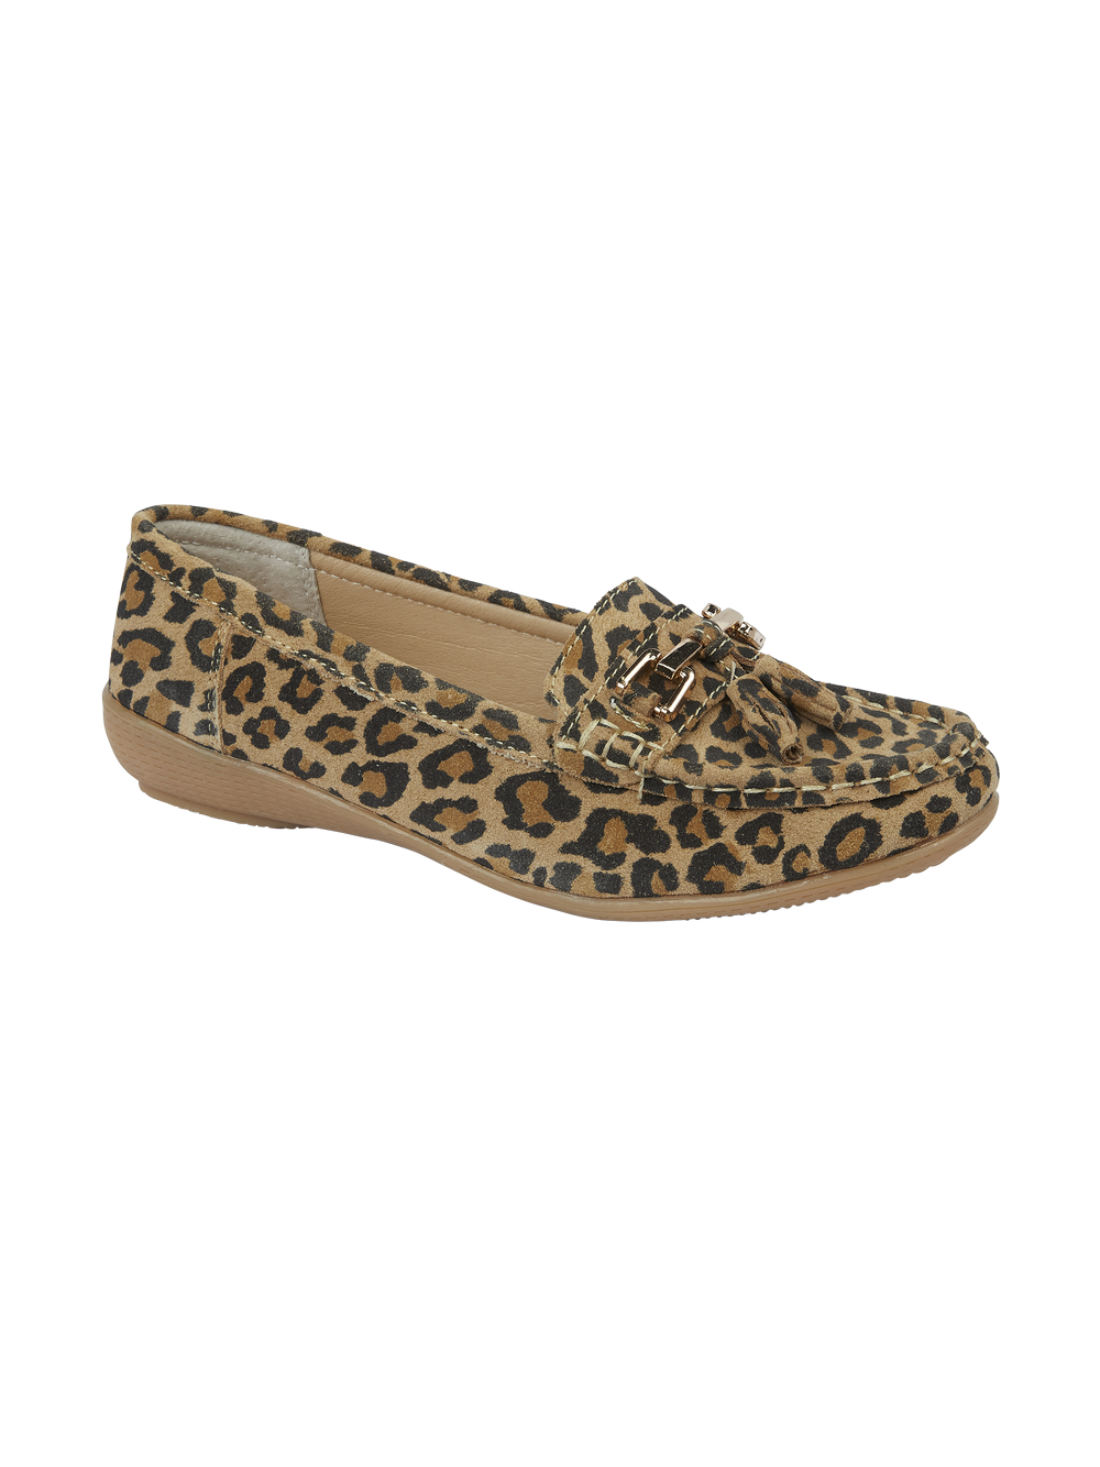 Jo & Joe leather leopard print loafer 4-8